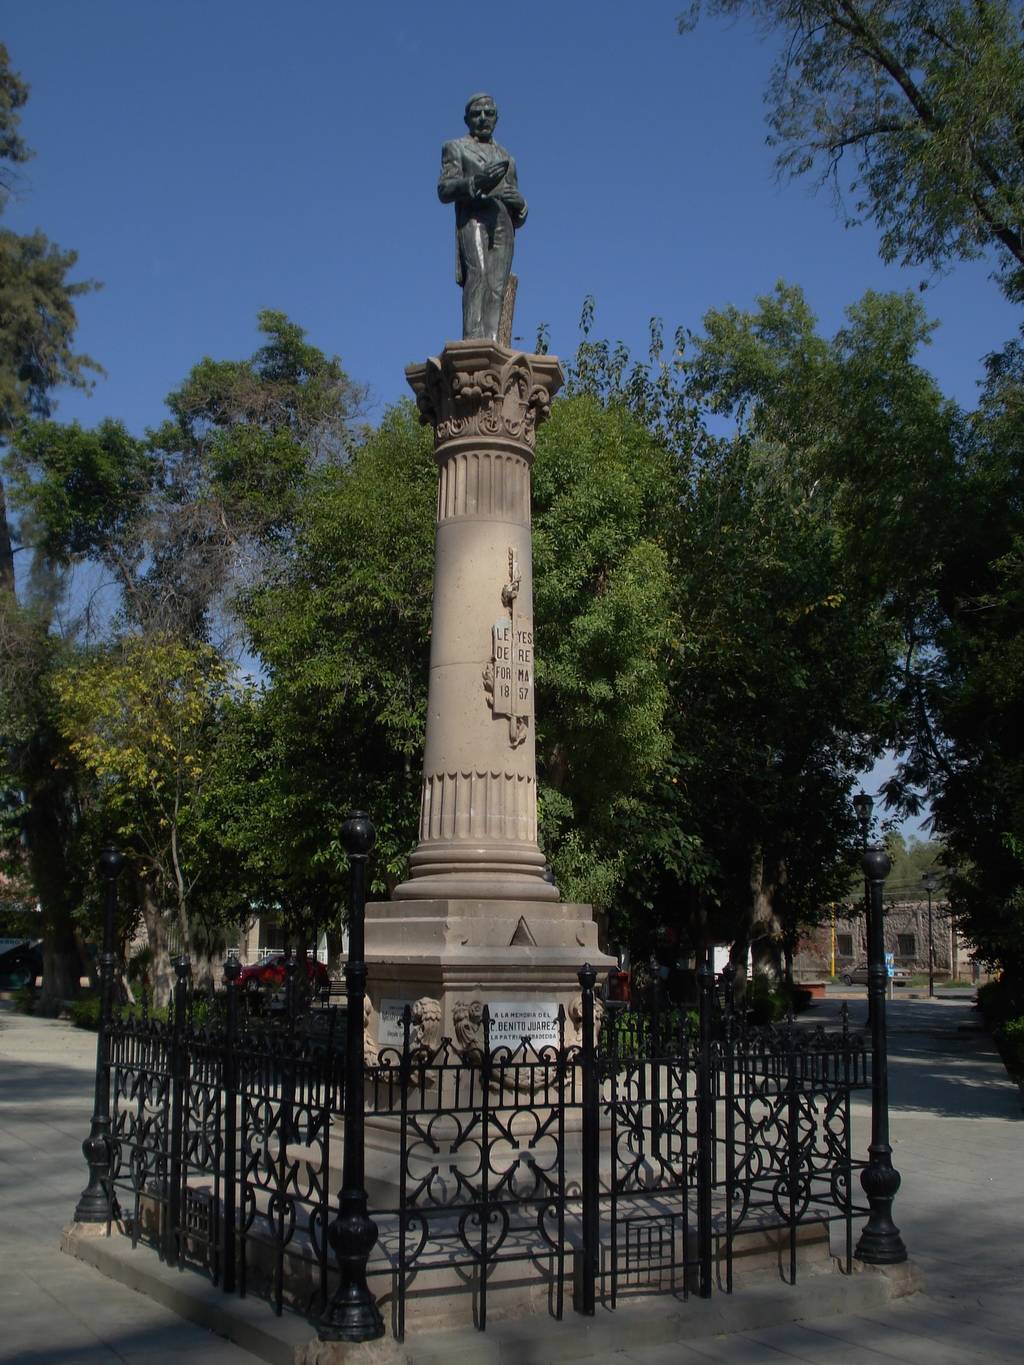 La plazuela y el monumento a Benito Juárez